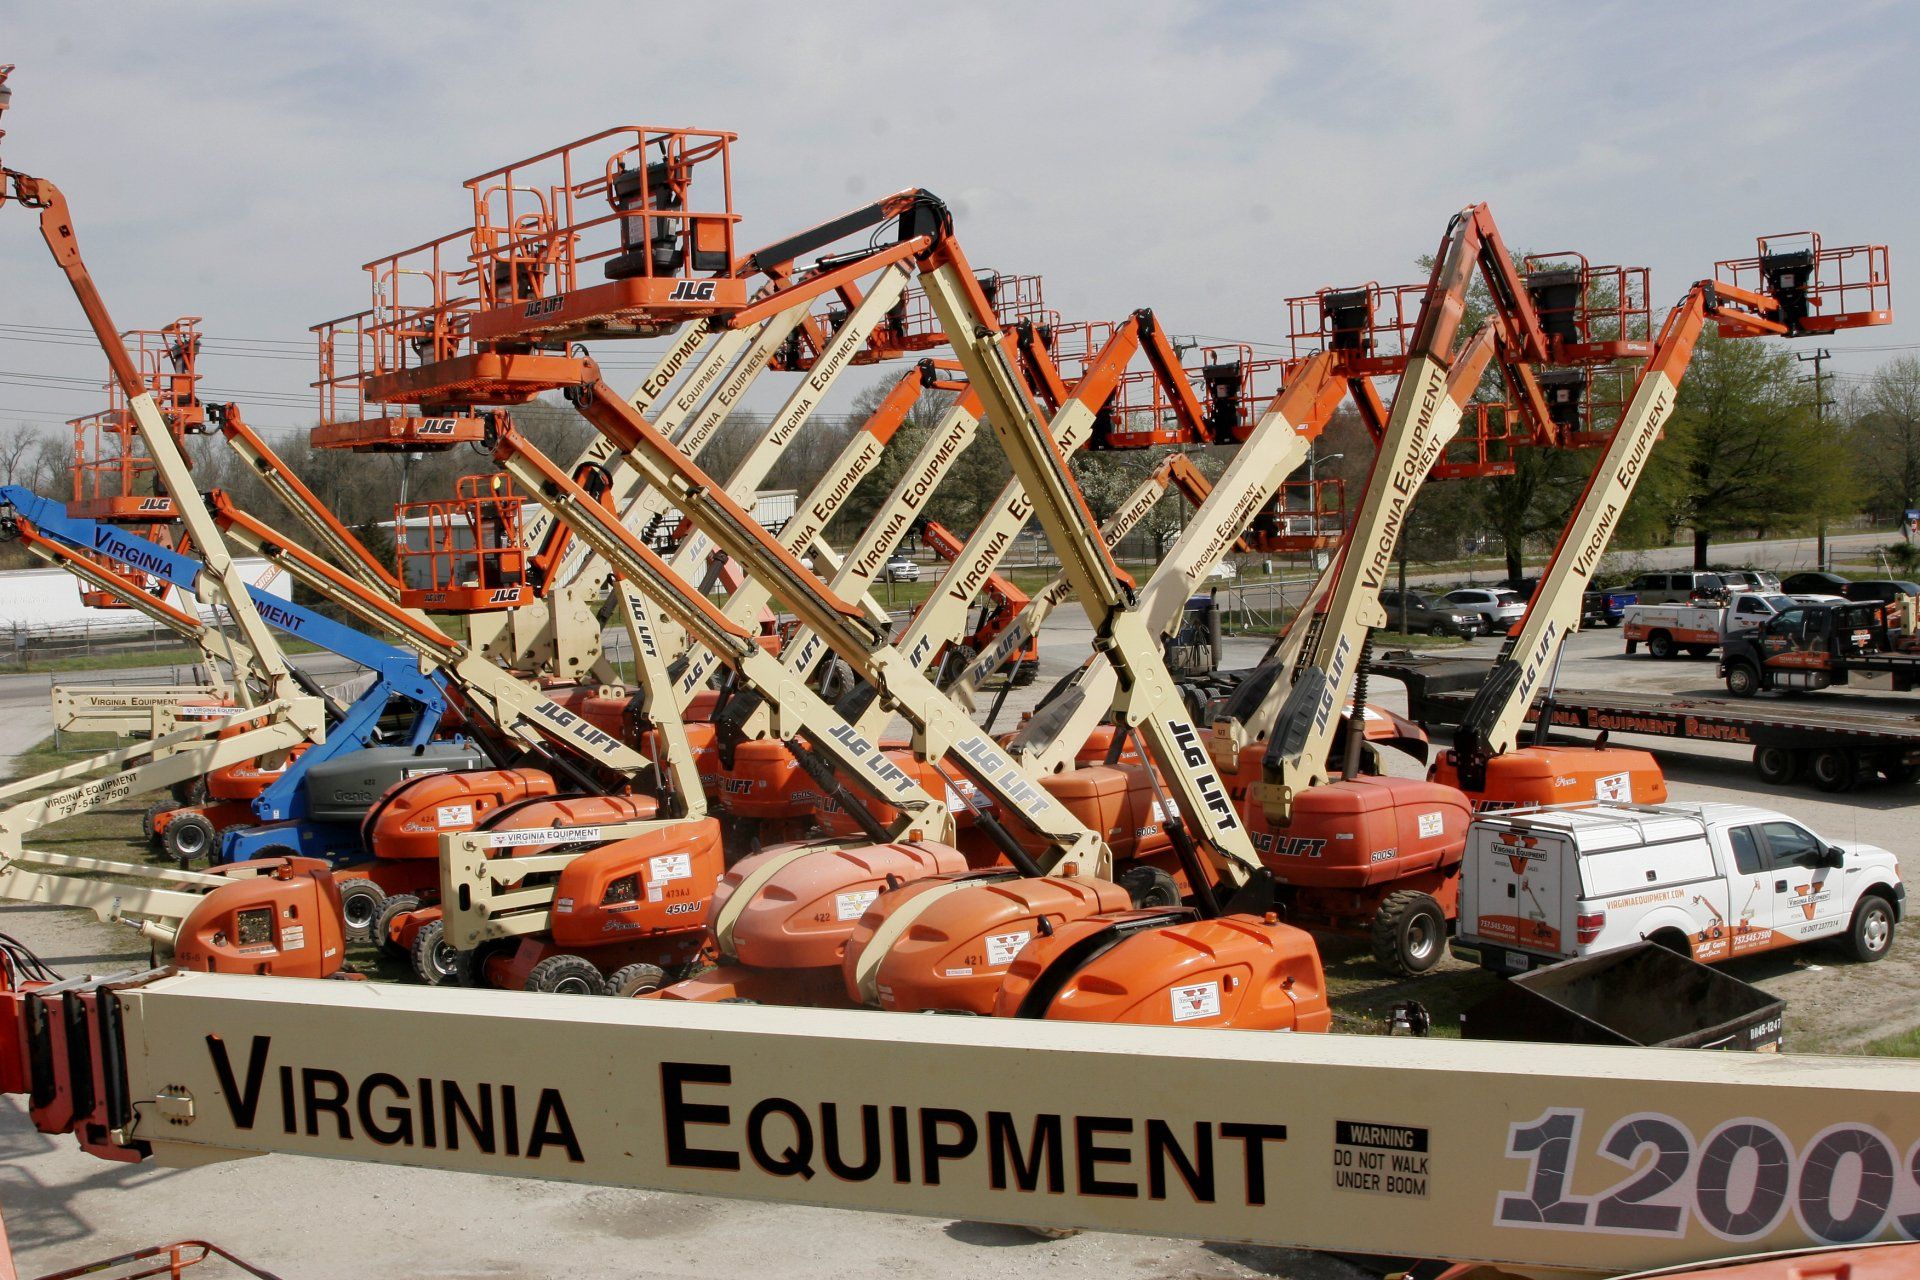 Virginia Equipment — Chesapeake, VA — Virginia Equipment Rental